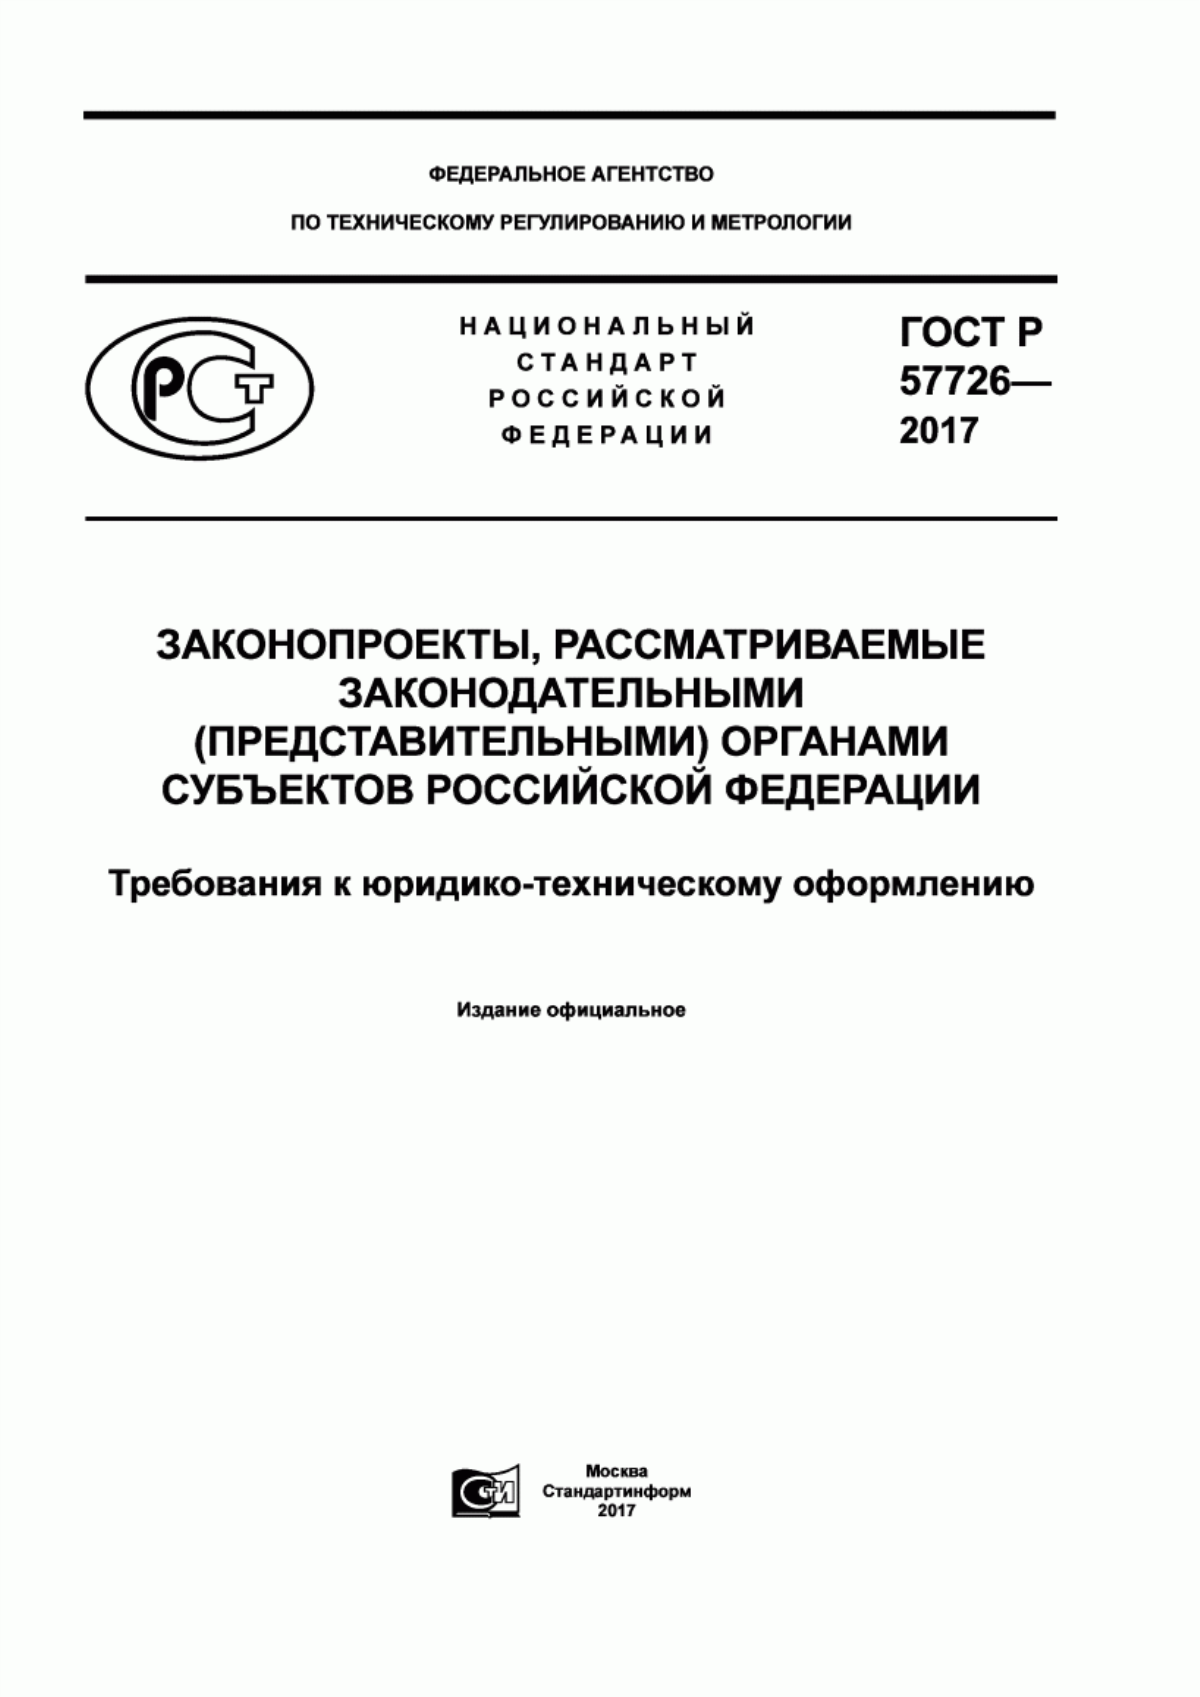 ГОСТ Р 57726-2017 Законопроекты, рассматриваемые законодательными (представительными) органами субъектов Российской Федерации. Требования к юридико-техническому оформлению